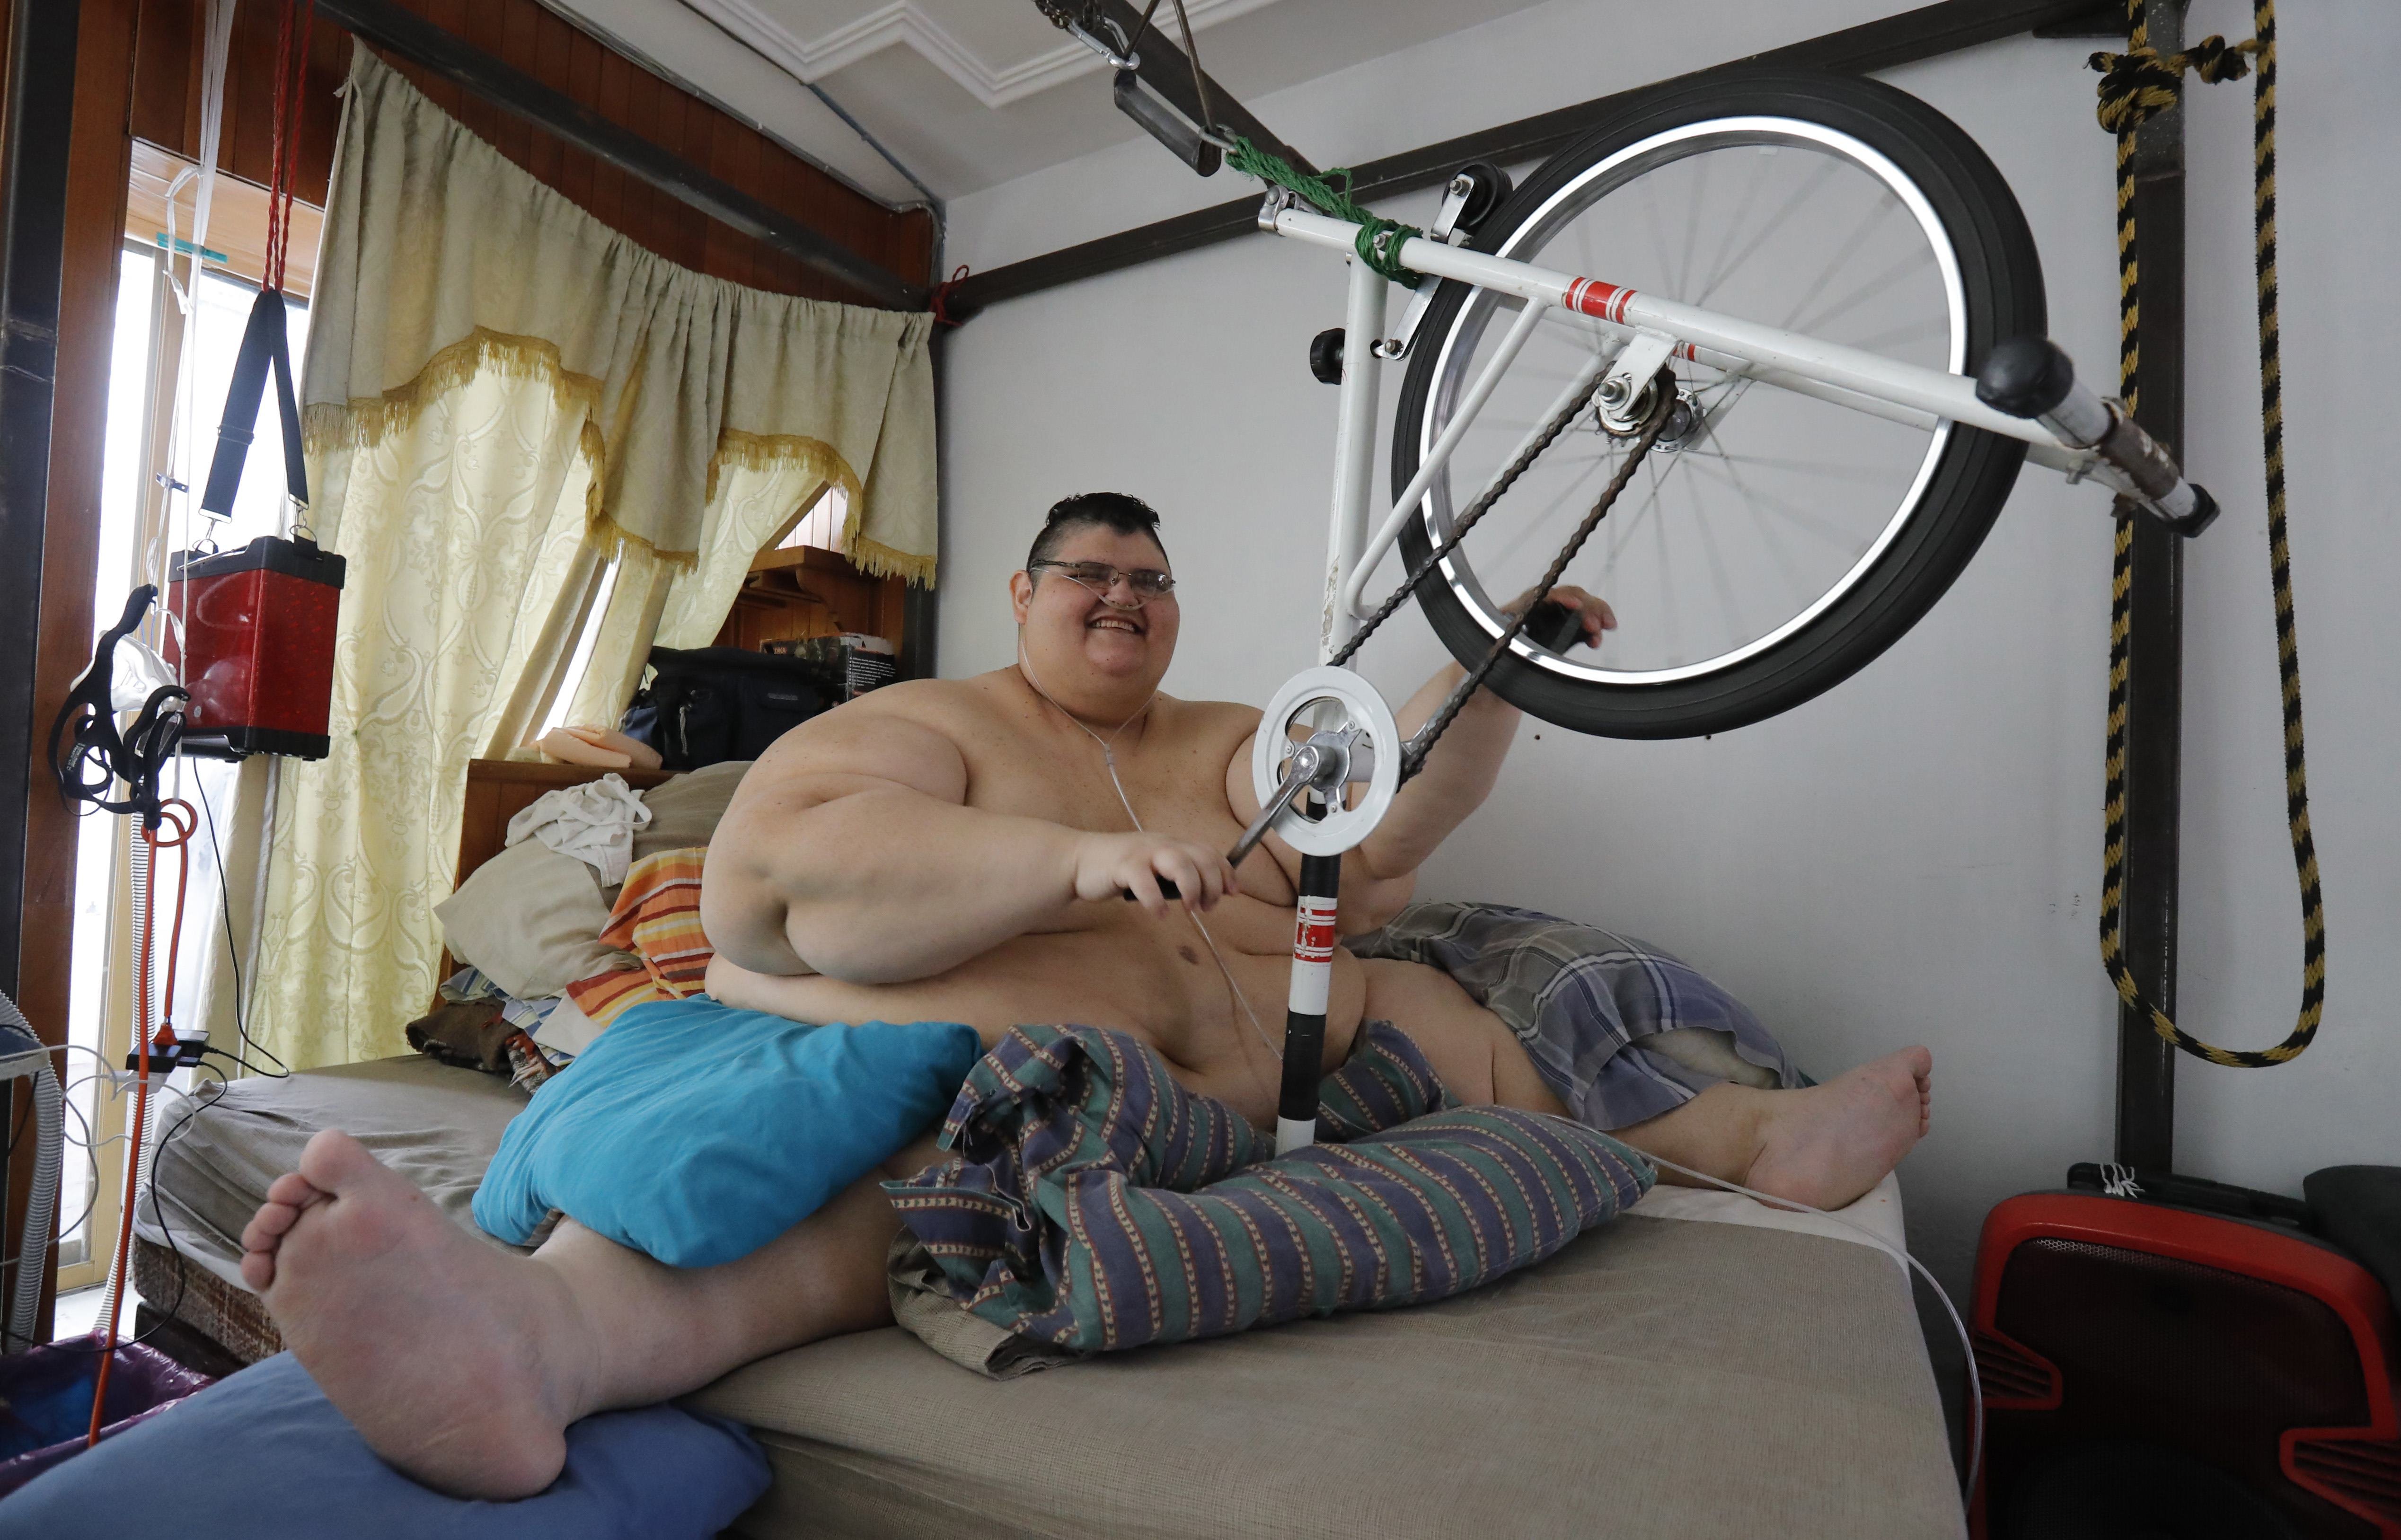 Е толстым х. Хуан Педро самый толстый. Хуан Педро Франко 600 кг. Хуан Педро самый тяжелый человек в мире.